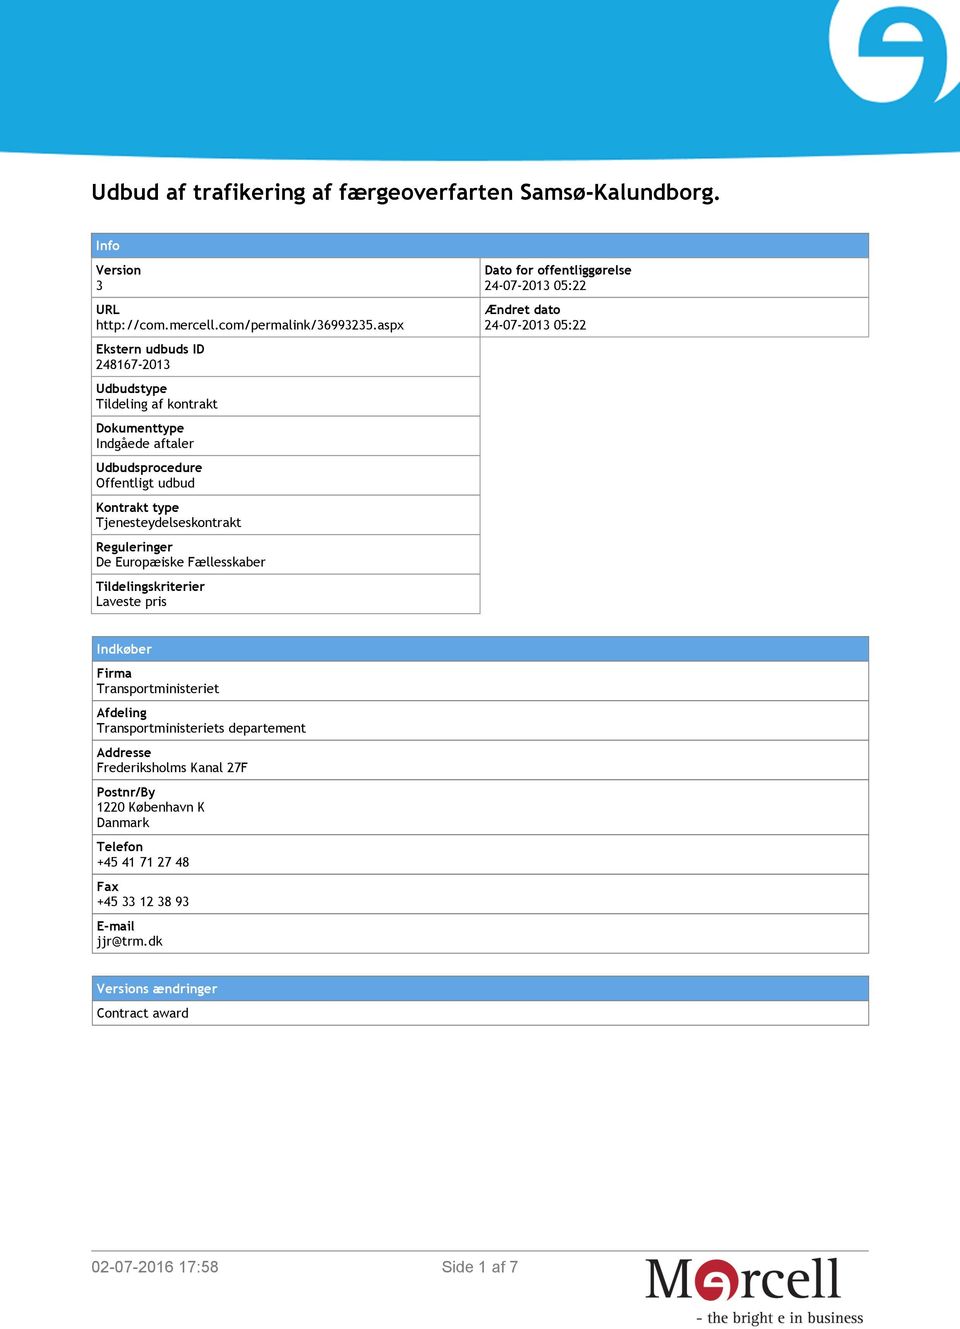 Reguleringer De Europæiske Fællesskaber Tildelingskriterier Laveste pris Dato for offentliggørelse 24-07-2013 05:22 Ændret dato 24-07-2013 05:22 Indkøber Firma